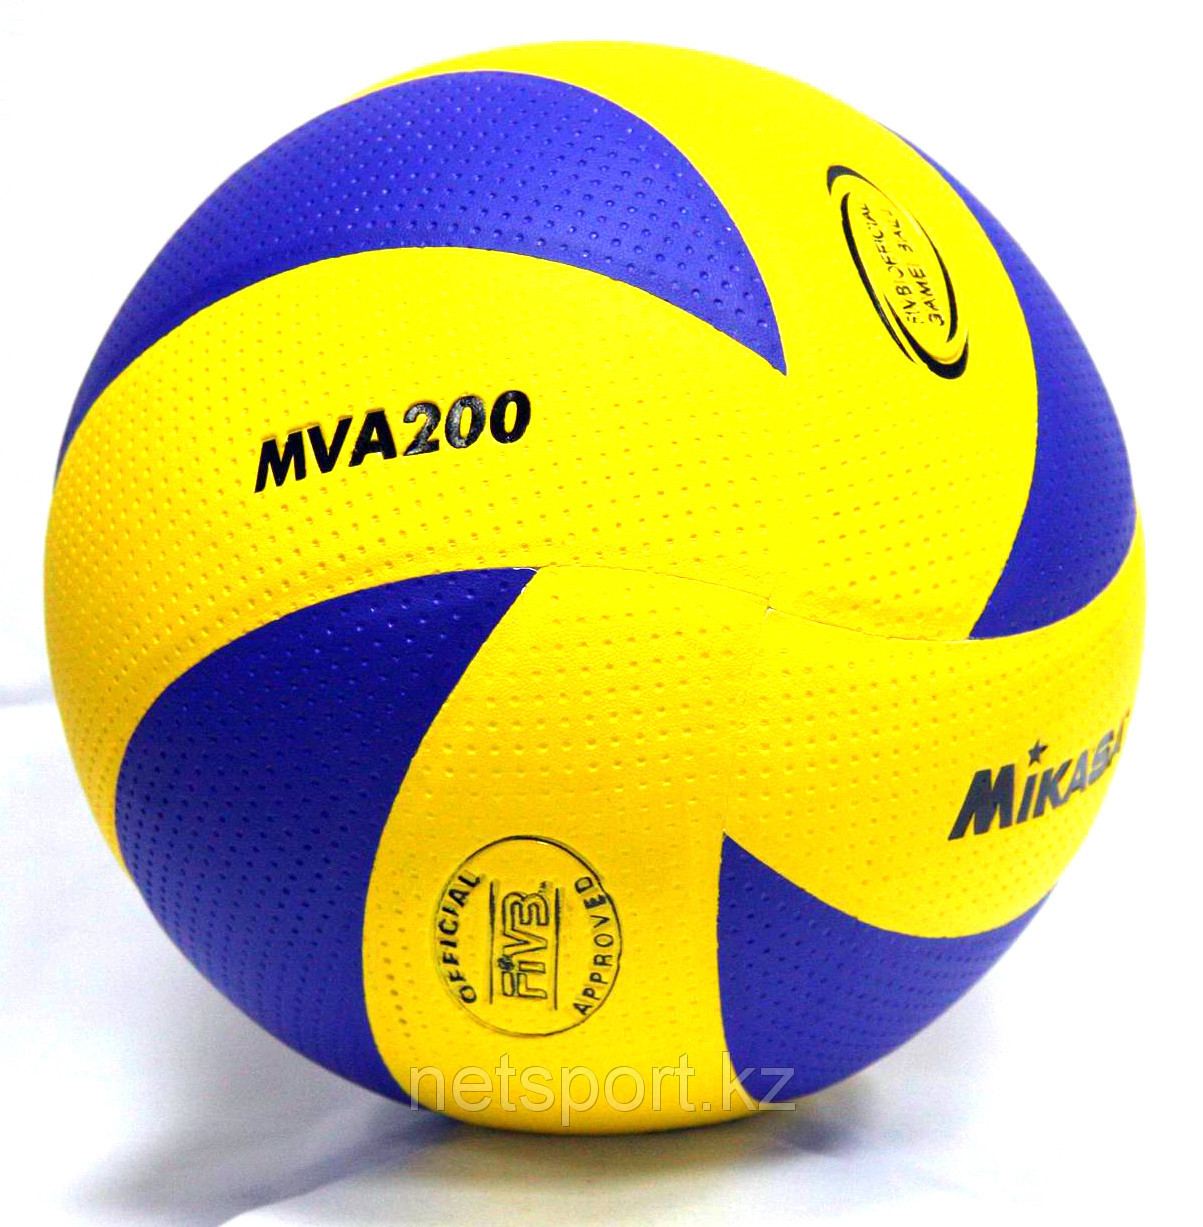 Волейбольный мяч Mikasa MVA 200, фото 1